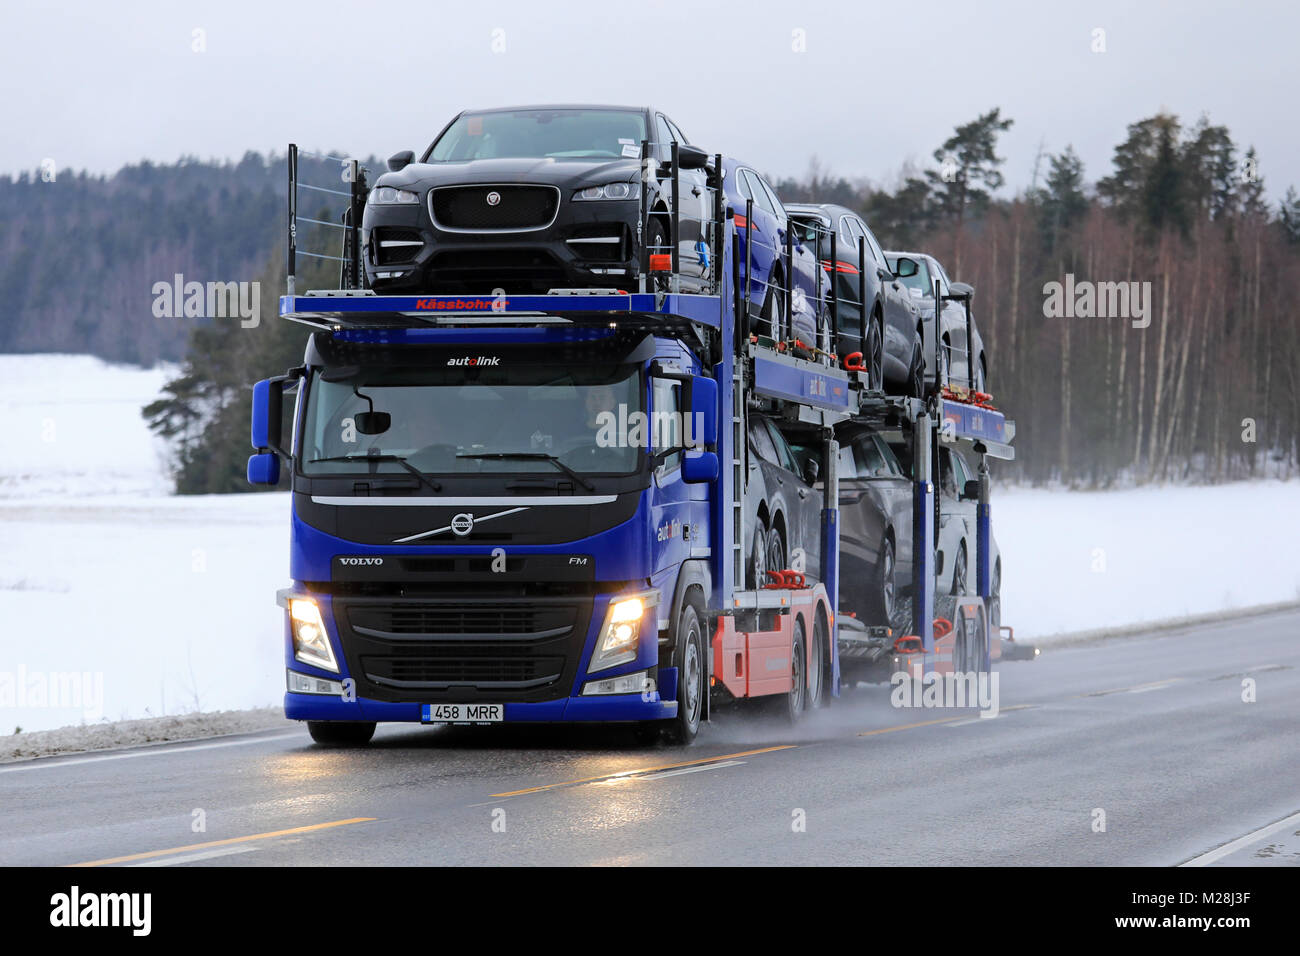 SALO, Finlandia - 2 febbraio 2018: VOLVO FM auto vettore di Autolink trasporta nuove vetture lungo la strada rurale in inverno. Foto Stock